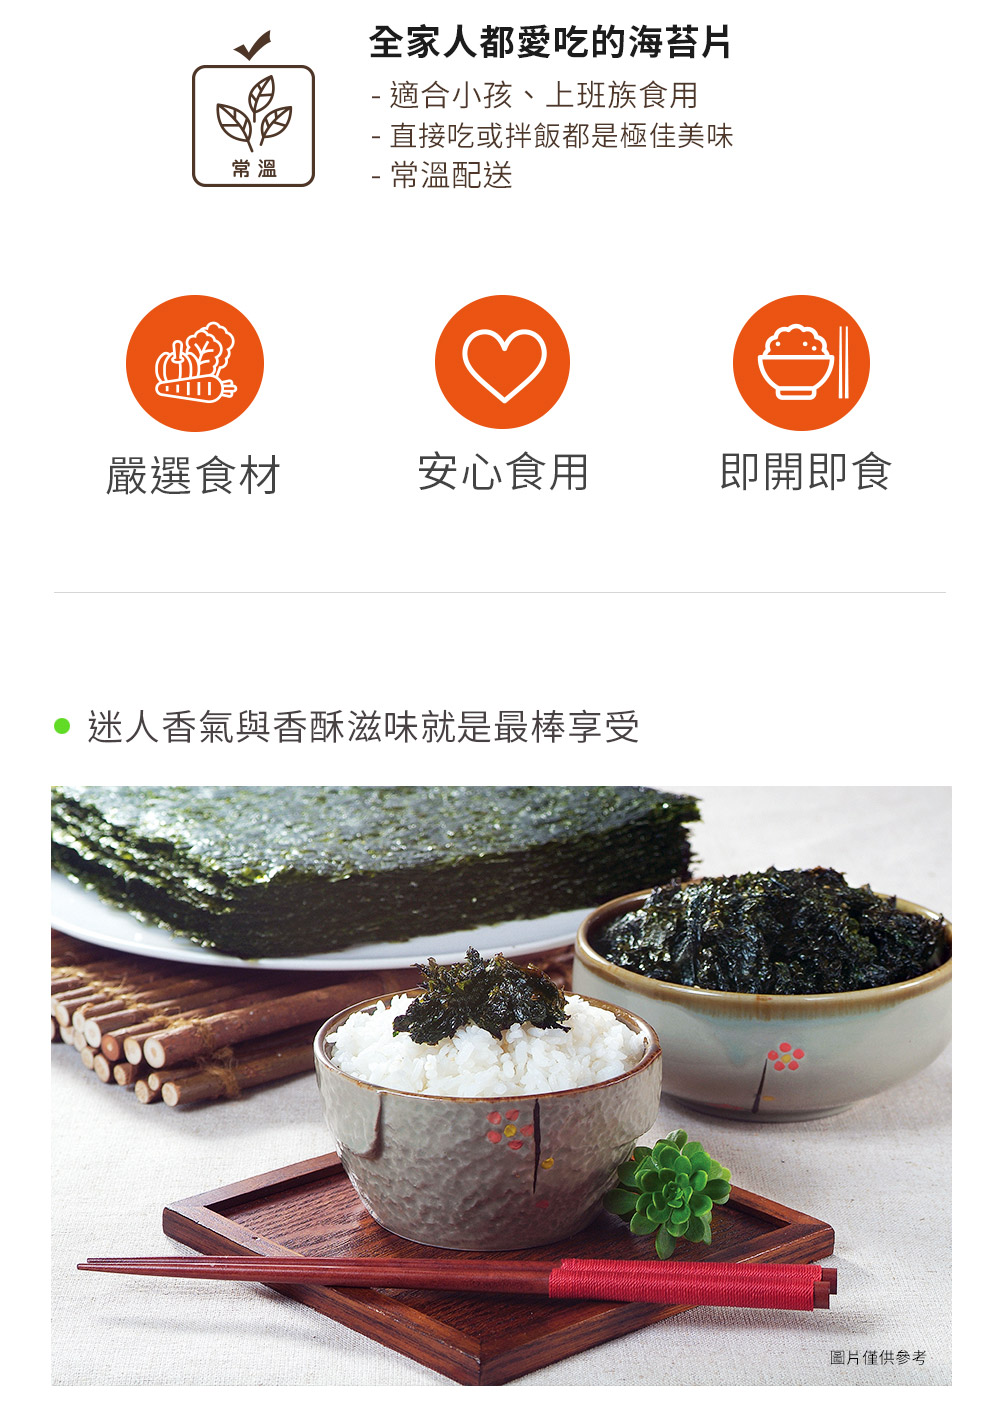 【韓味不二】OURHOME海苔片(3入/袋) 4種口味任選 韓國純淨無汙染海域